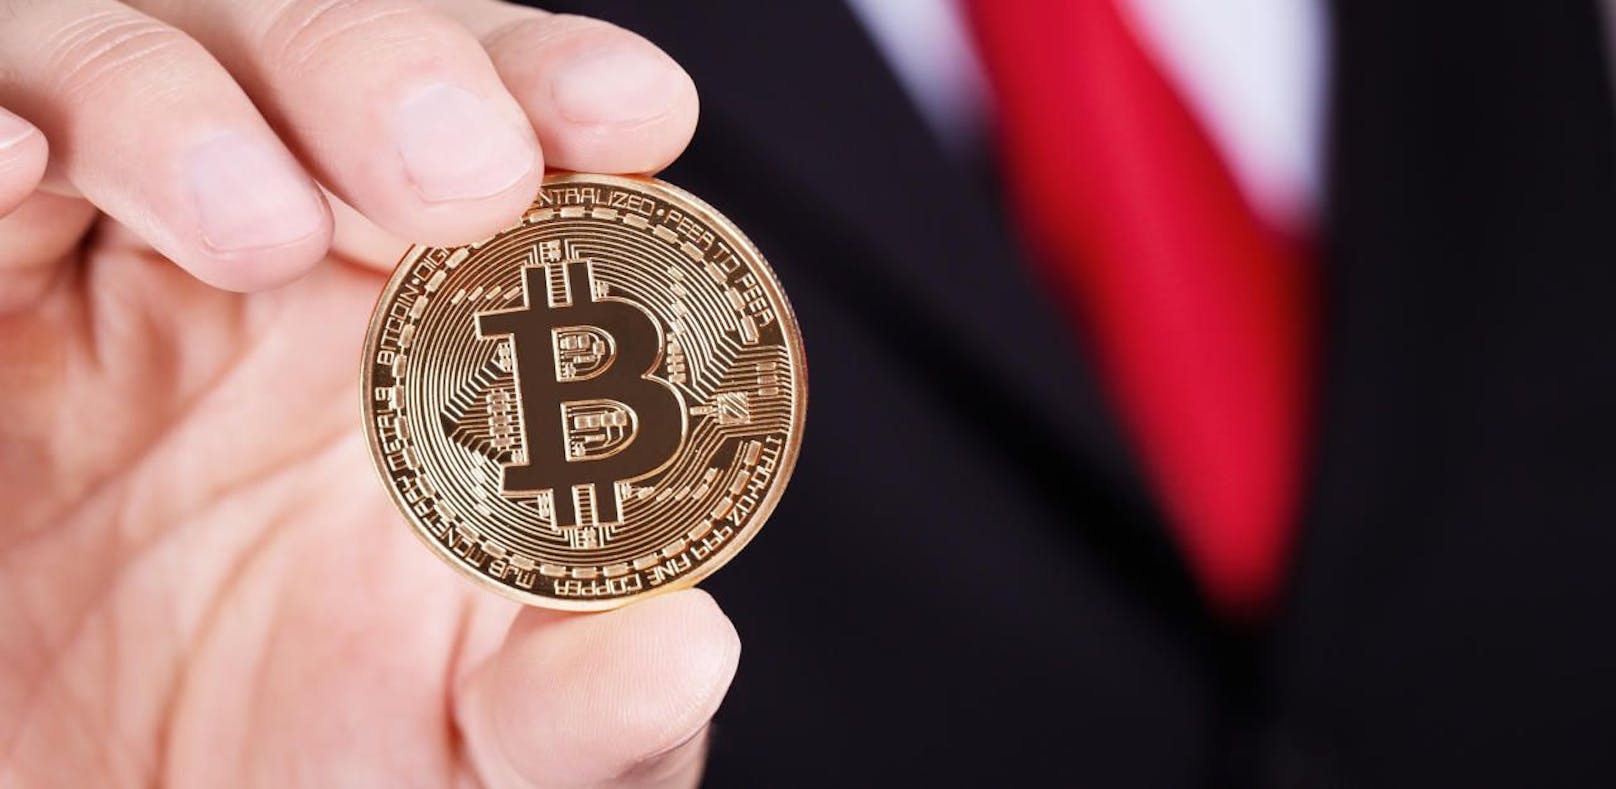 (Symbolbild) Die Kryptowährung Bitcoin soll von US-Geheimdiensten als Finanzierungsmöglichkeit entwickelt worden sein.